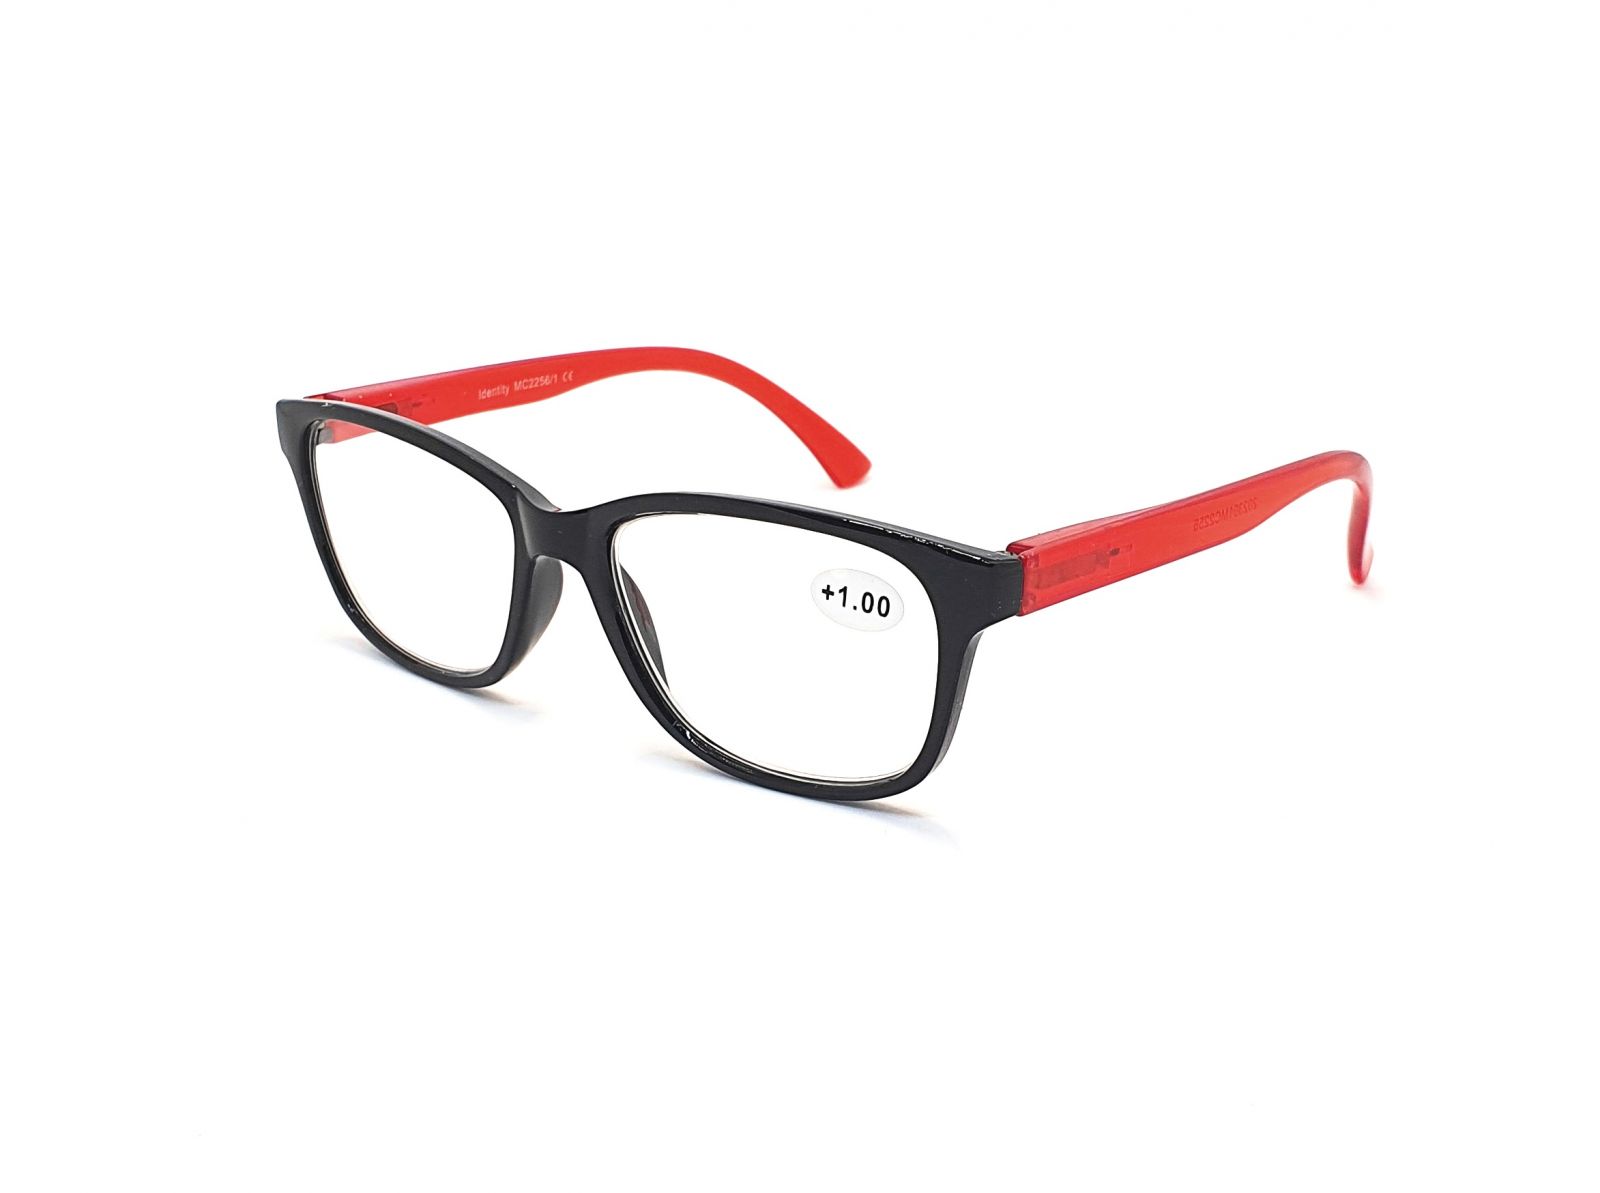 Dioptrické brýle MC2256 +2,50 flex black/red